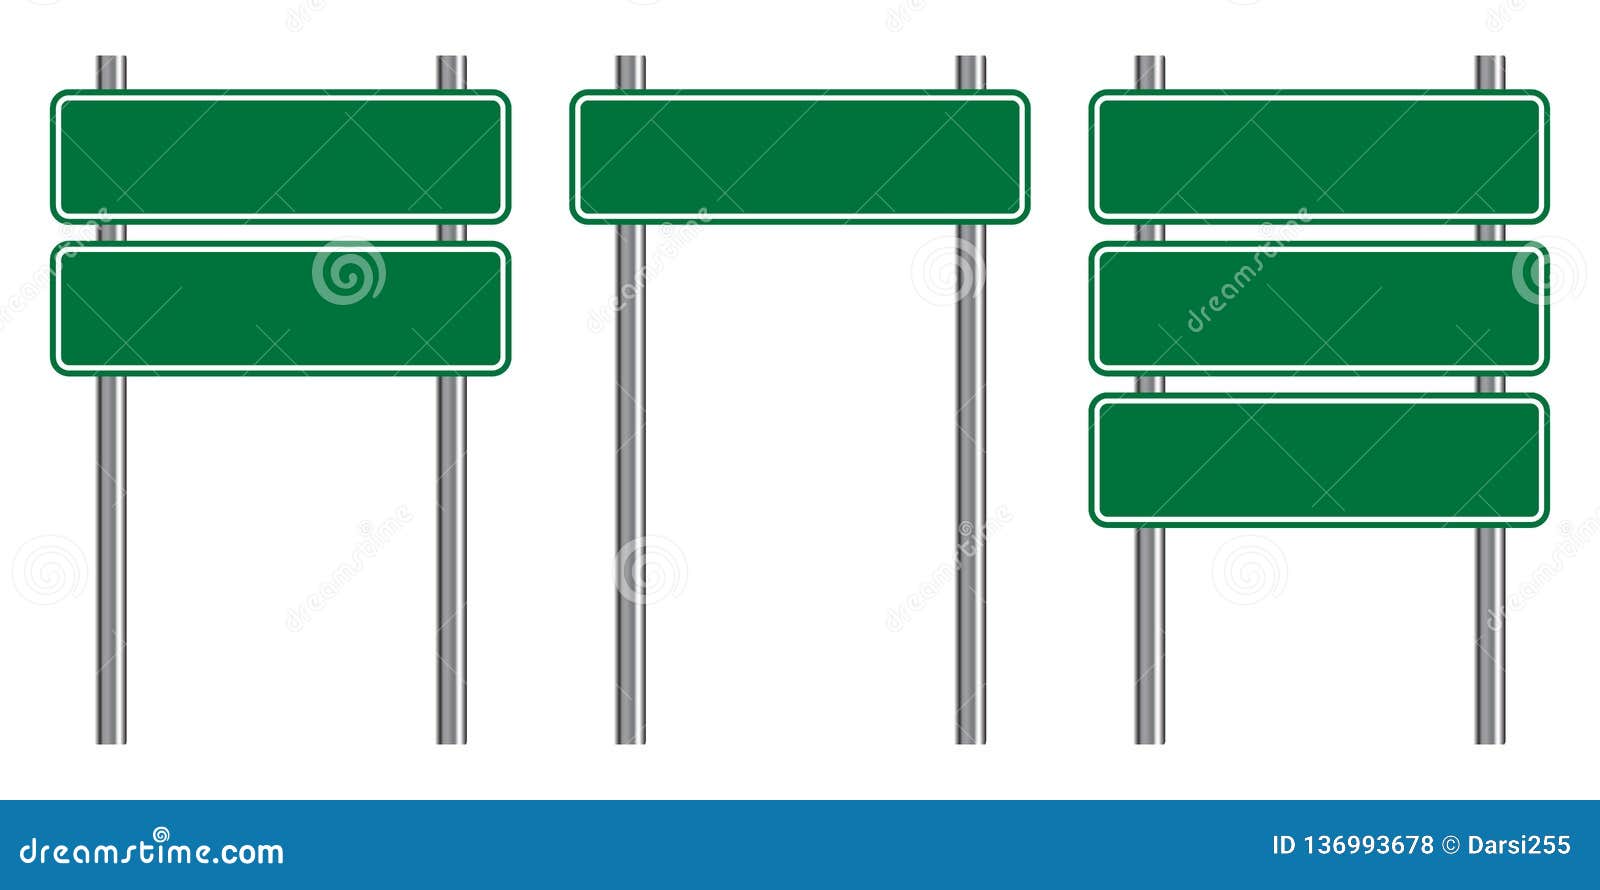 Biển báo đường giao thông là những dấu hiệu cơ bản trong việc phân biệt các loại đường và các tình huống giao thông phức tạp. Hãy cùng xem những hình ảnh liên quan đến biển báo đường giao thông để nâng cao kiến thức và đảm bảo an toàn khi tham gia giao thông.